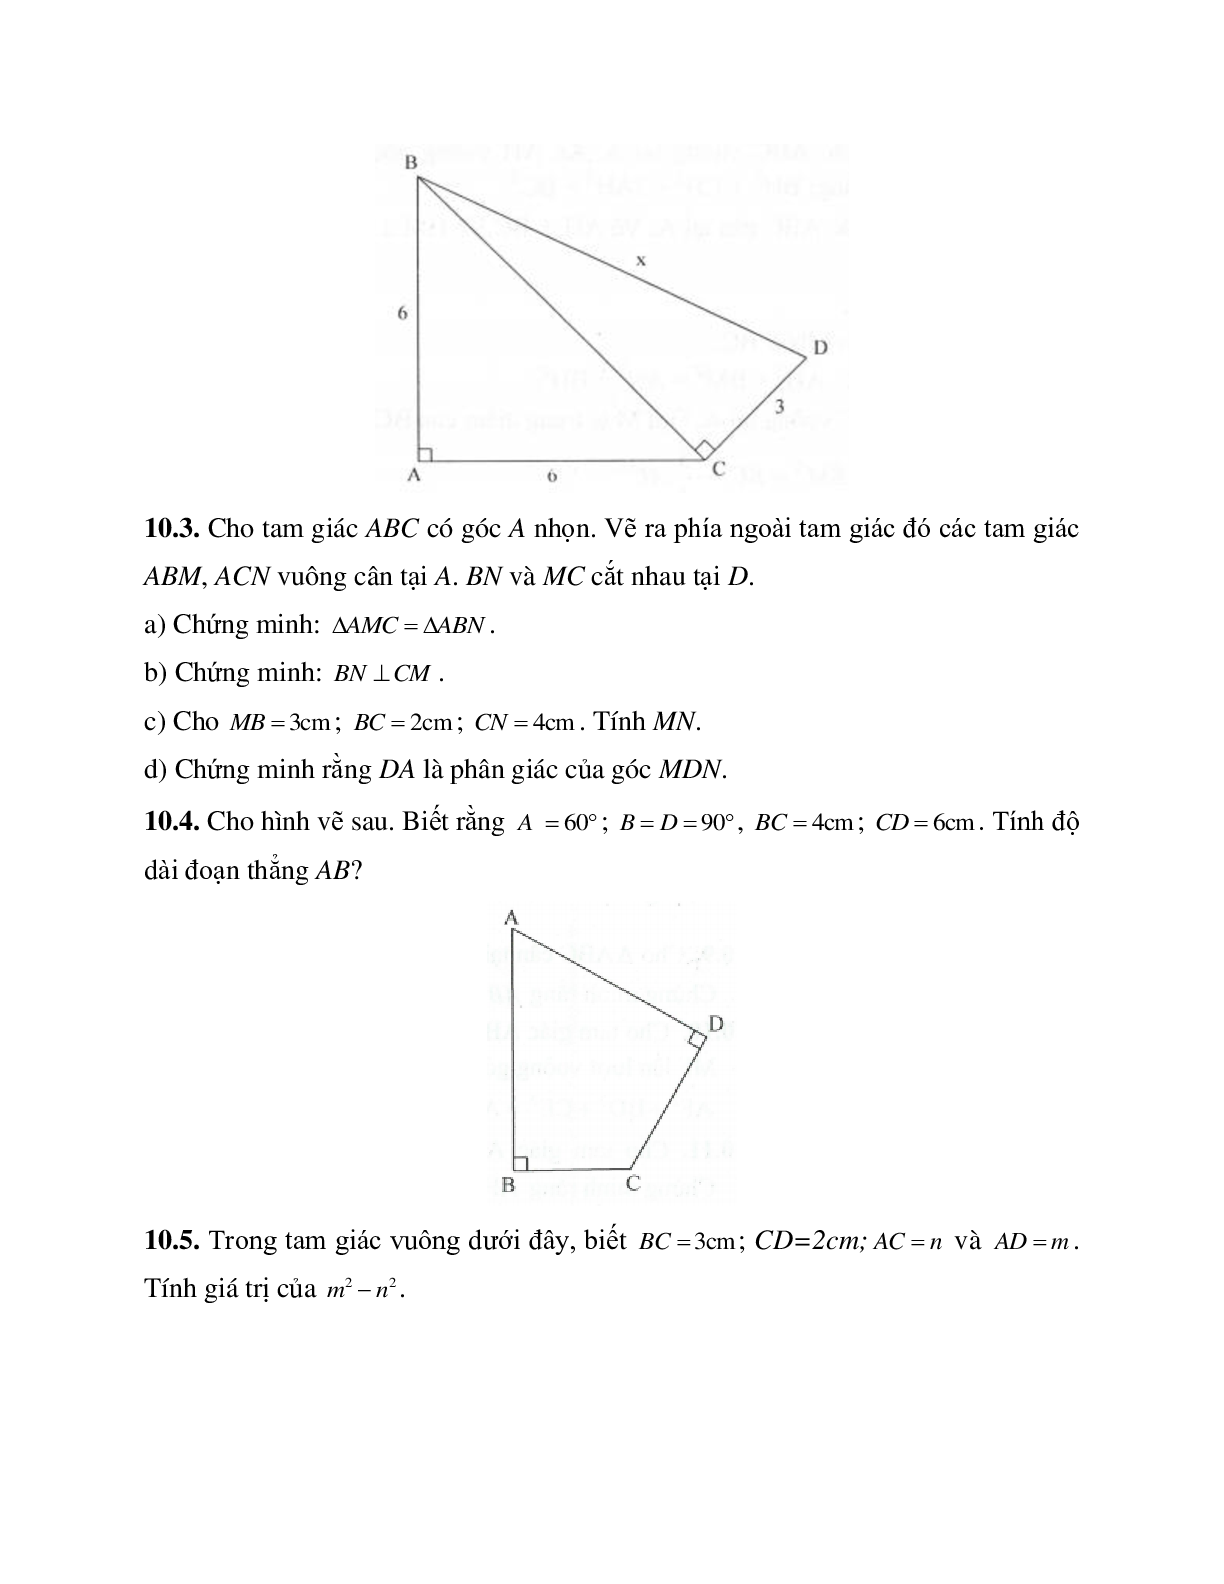 Những bài tập điển hình về Định lý Pi-ta-go trong tam giác vuông có lời giải (trang 9)